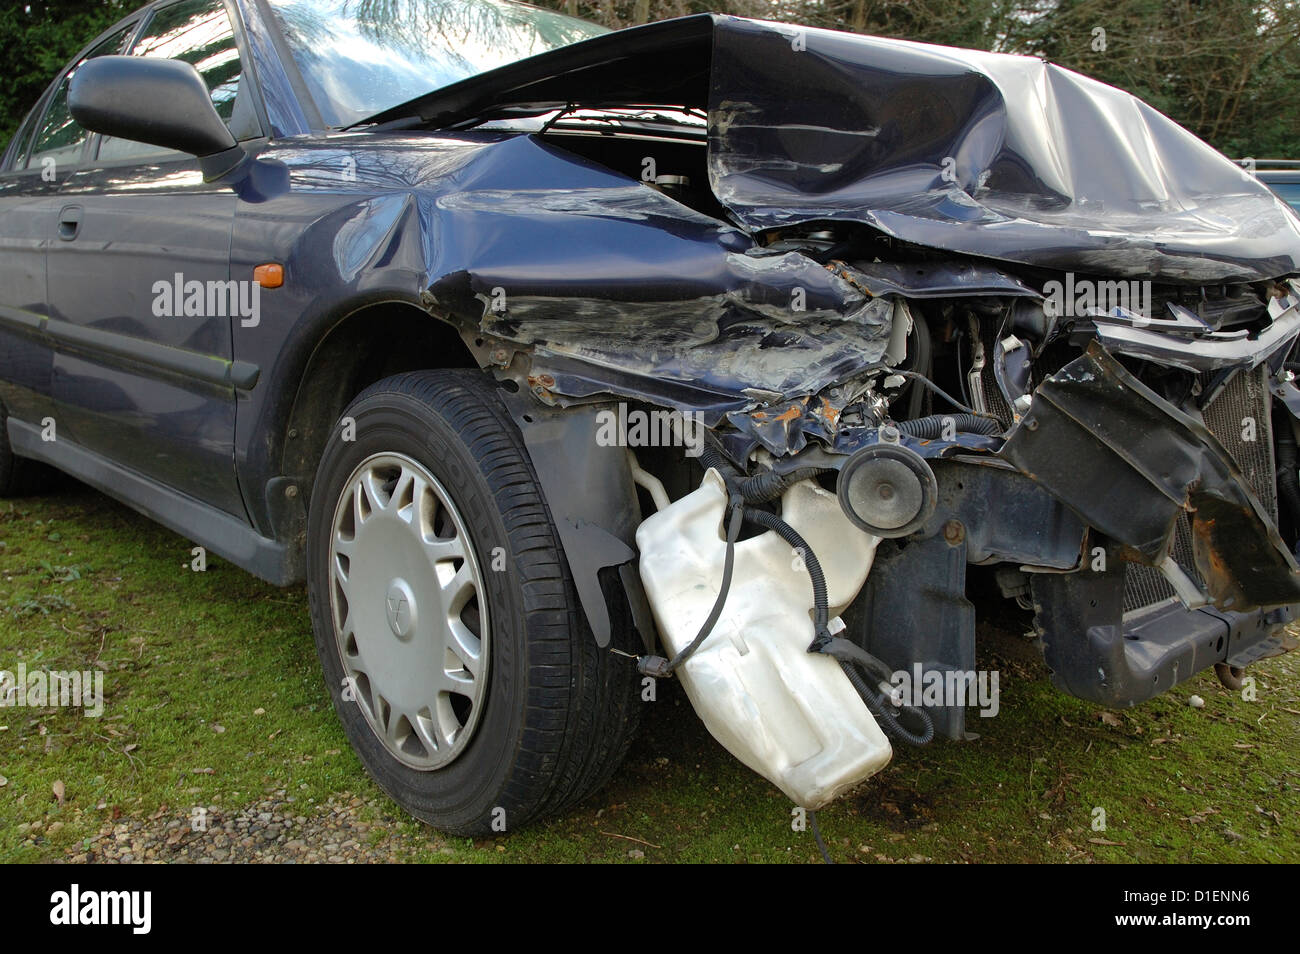 Accident damaged motorcar Stock Photo